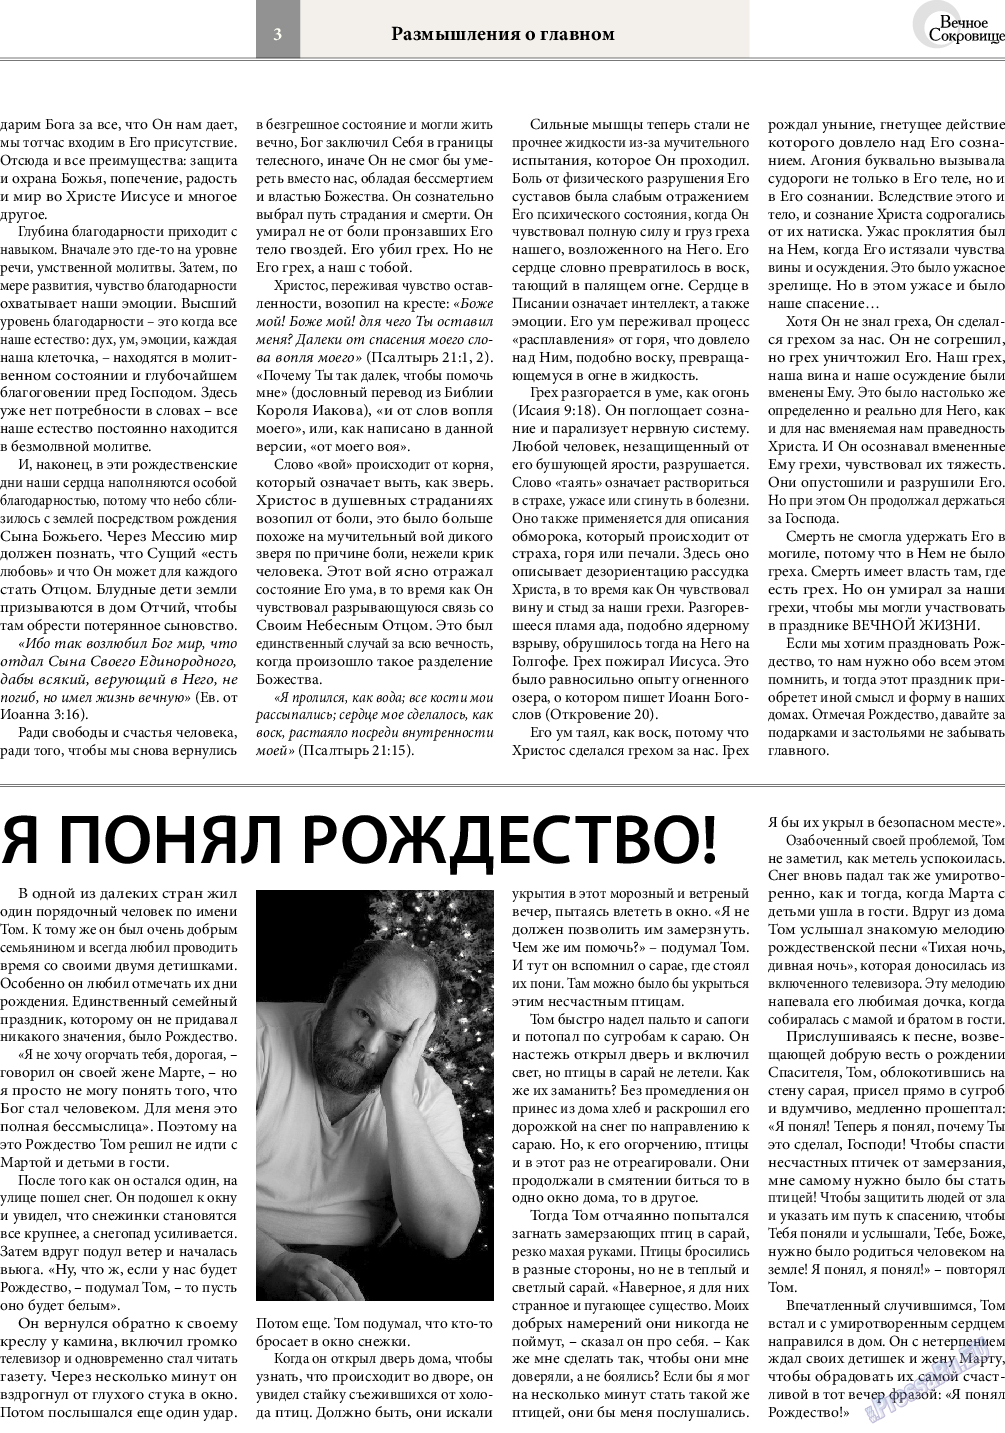 Вечное сокровище, газета. 2015 №6 стр.3